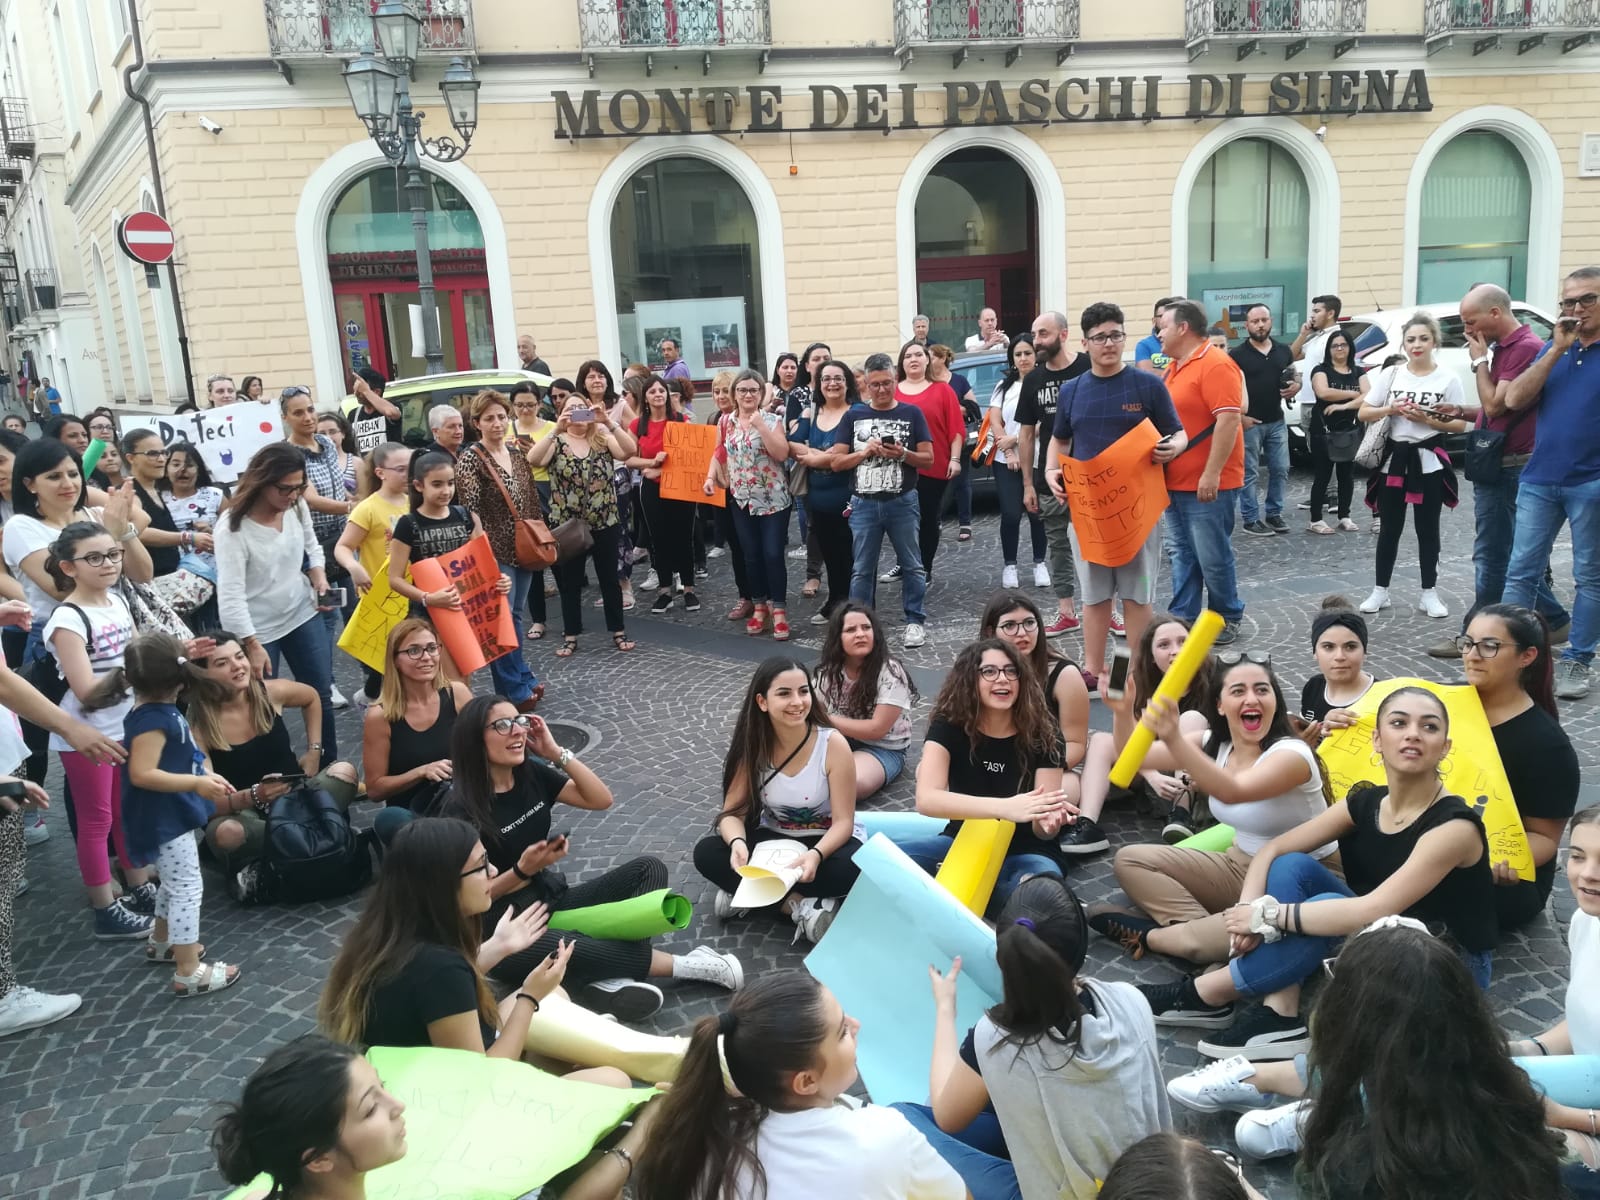 Teatro Grandinetti indisponibile, la protesta si sposta per le vie del centro